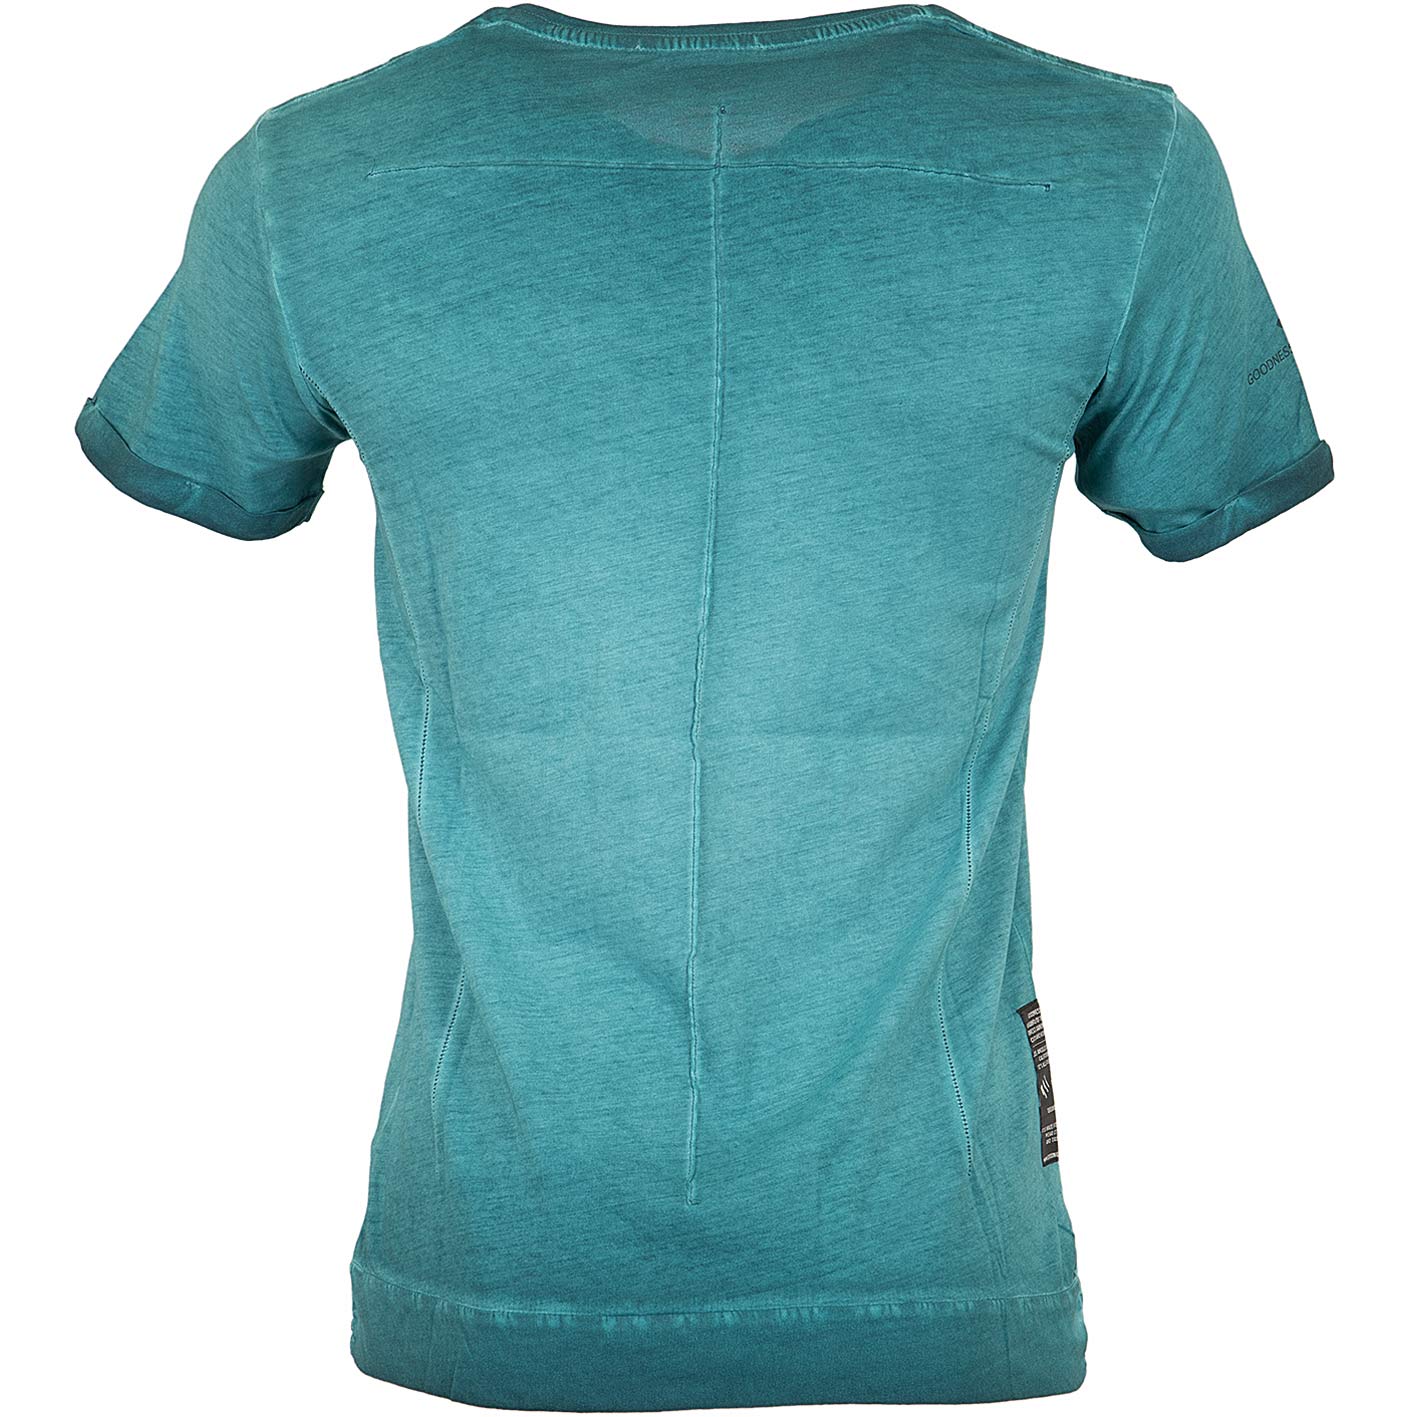 ☆ Goodness Industries T-Shirt Flo dunkelgrün - hier bestellen!